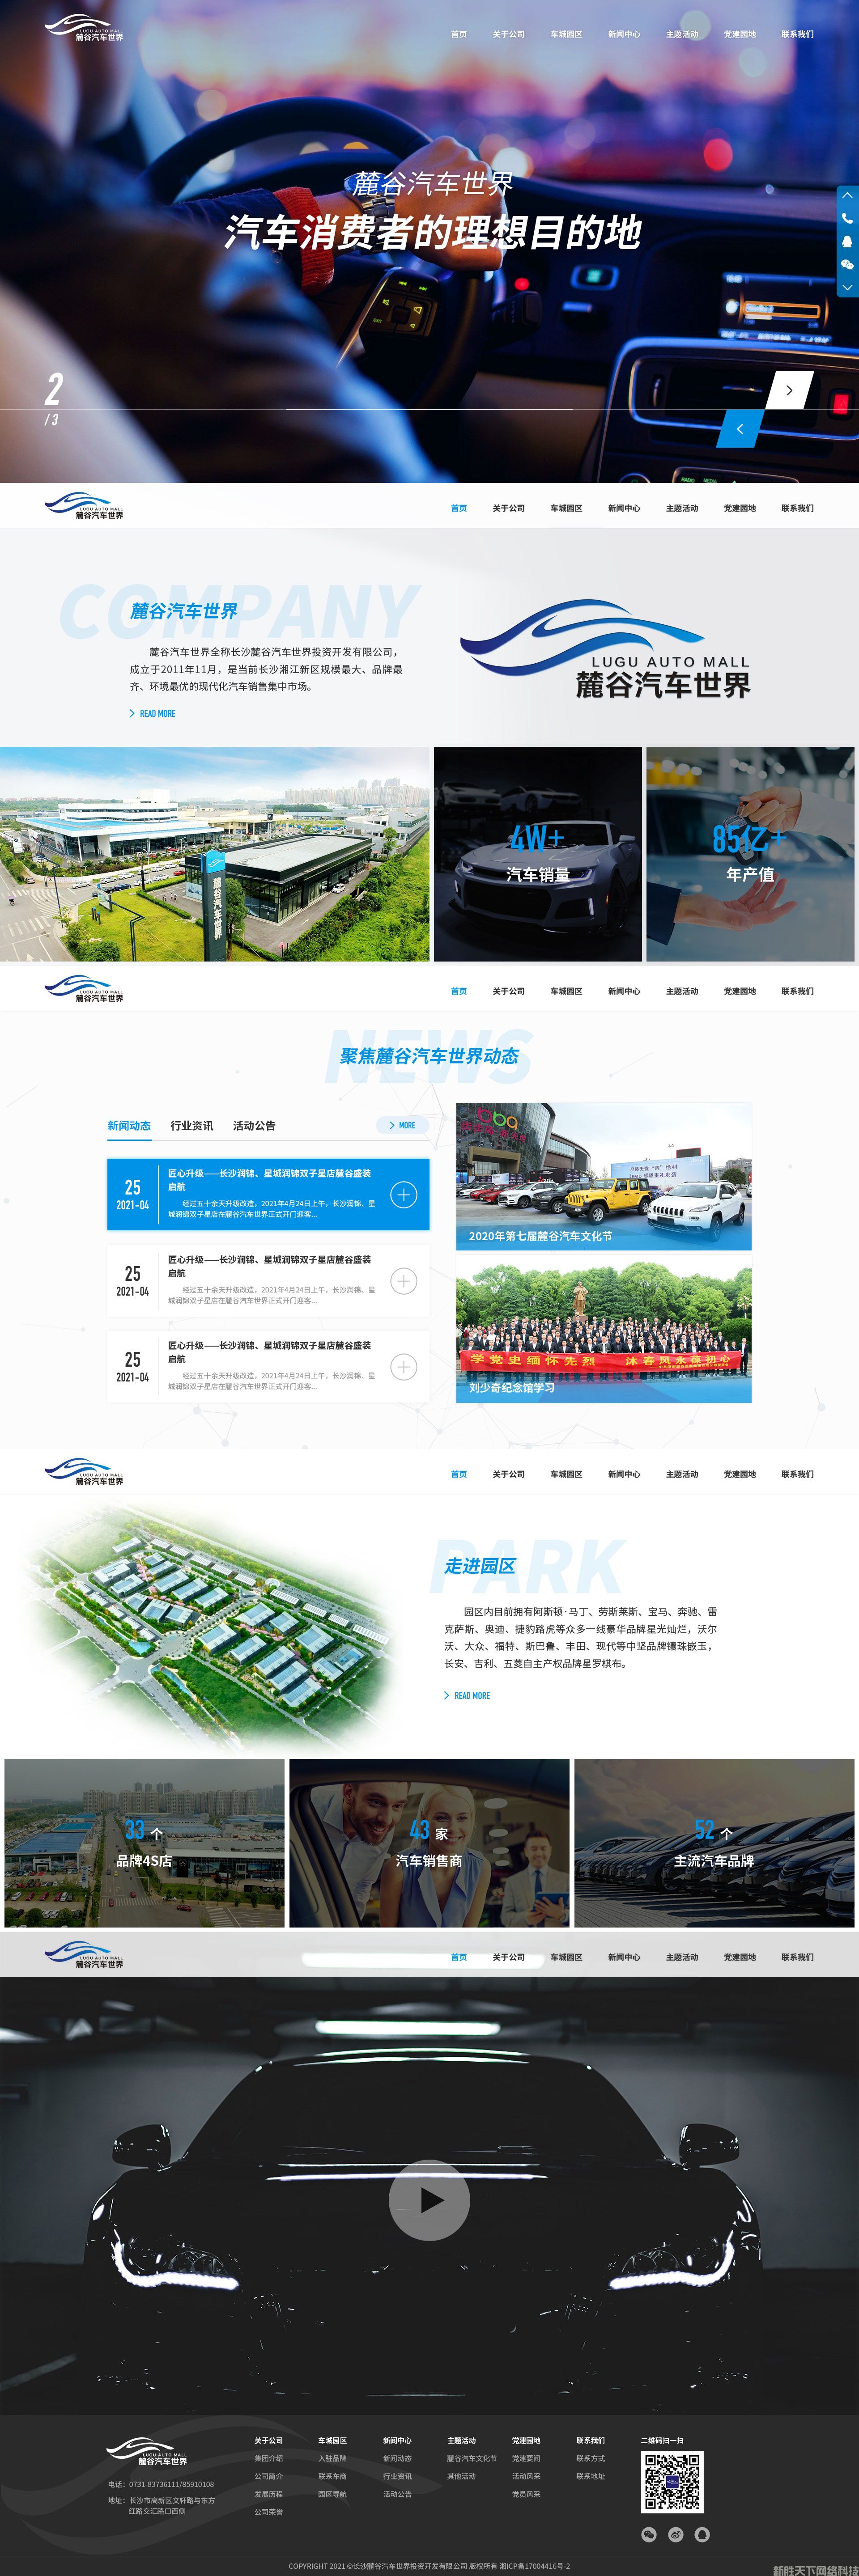 网站建设案例展示——【麓谷汽车世界】(图1)